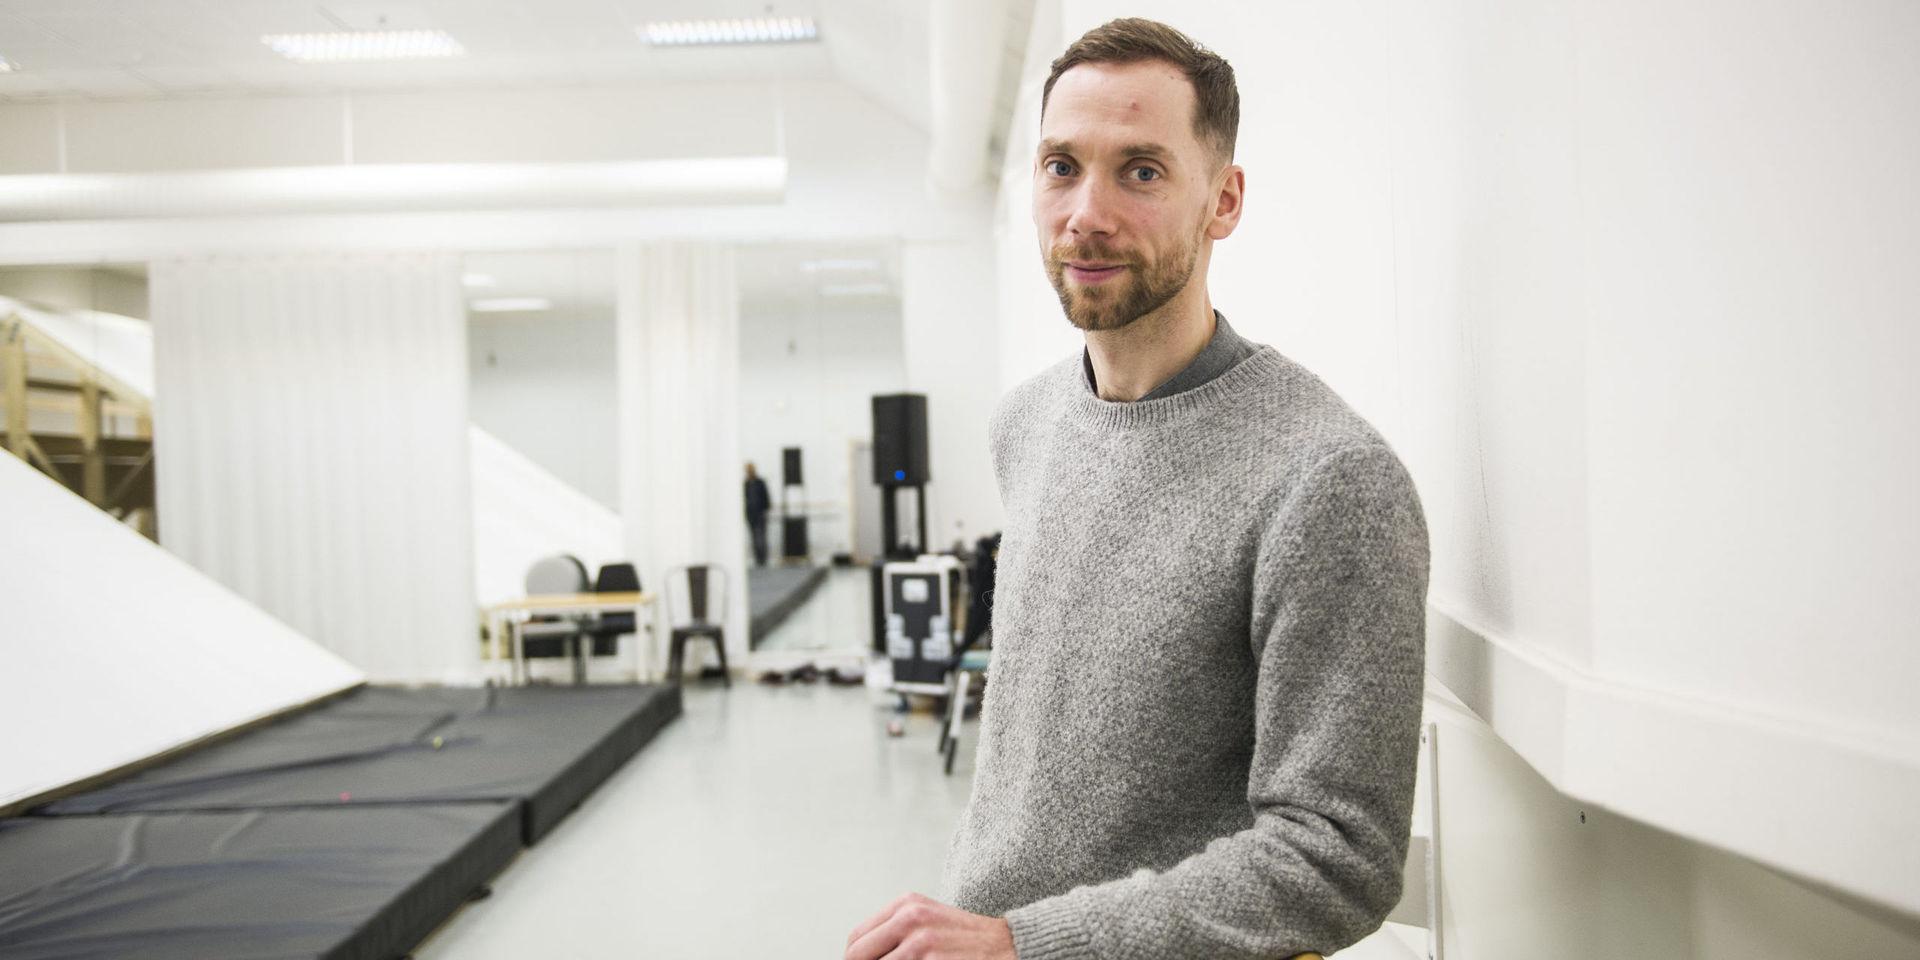 Ján Špoták är själv dansare och arbetar som planerings- och projektadministratör på Göteborgsoperans danskompani. Han satt i juryn under rekryteringen.